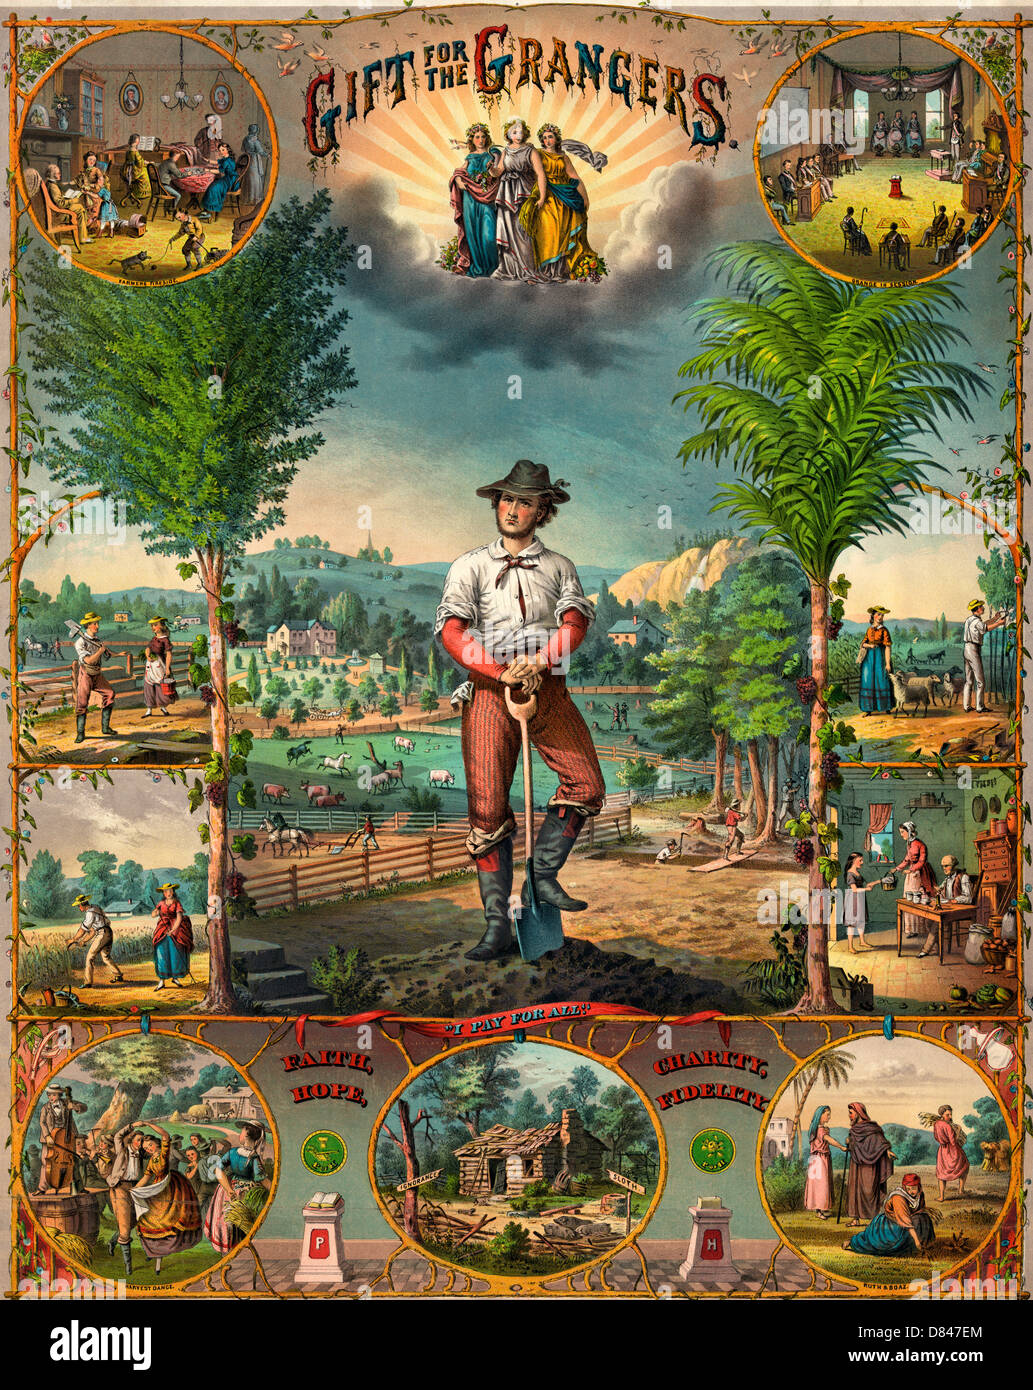 Regalo para el grangers - impresión promocional para Grange miembros mostrando escenas de la agricultura y de la vida agrícola, circa 1873 Foto de stock